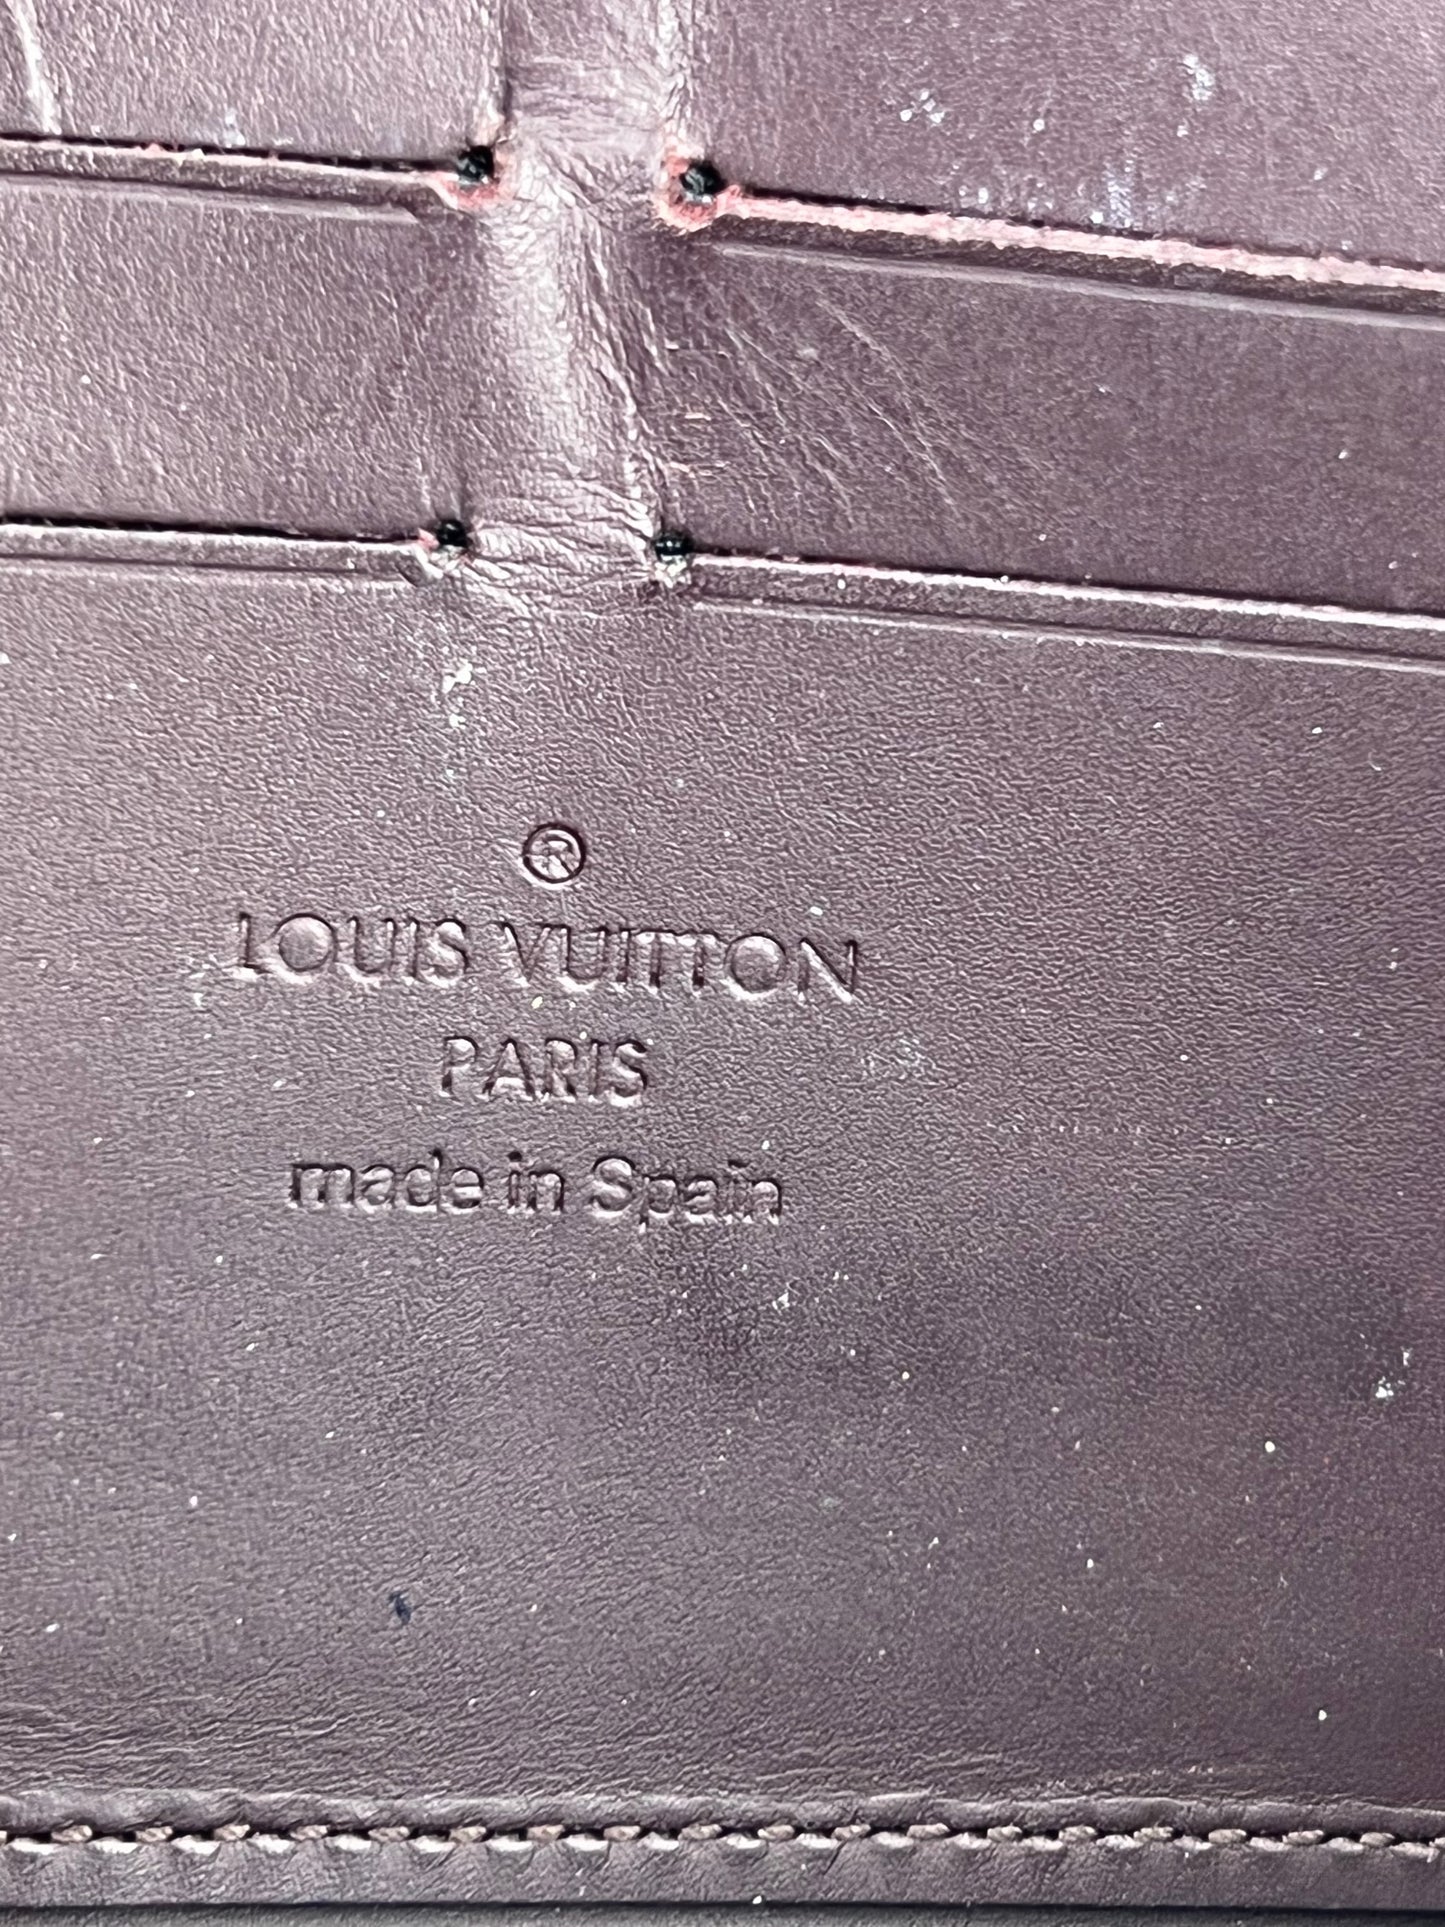 Louis Vuitton Amarante Monogram Vernis Zippy Wallet Louis Vuitton | The  Luxury Closet